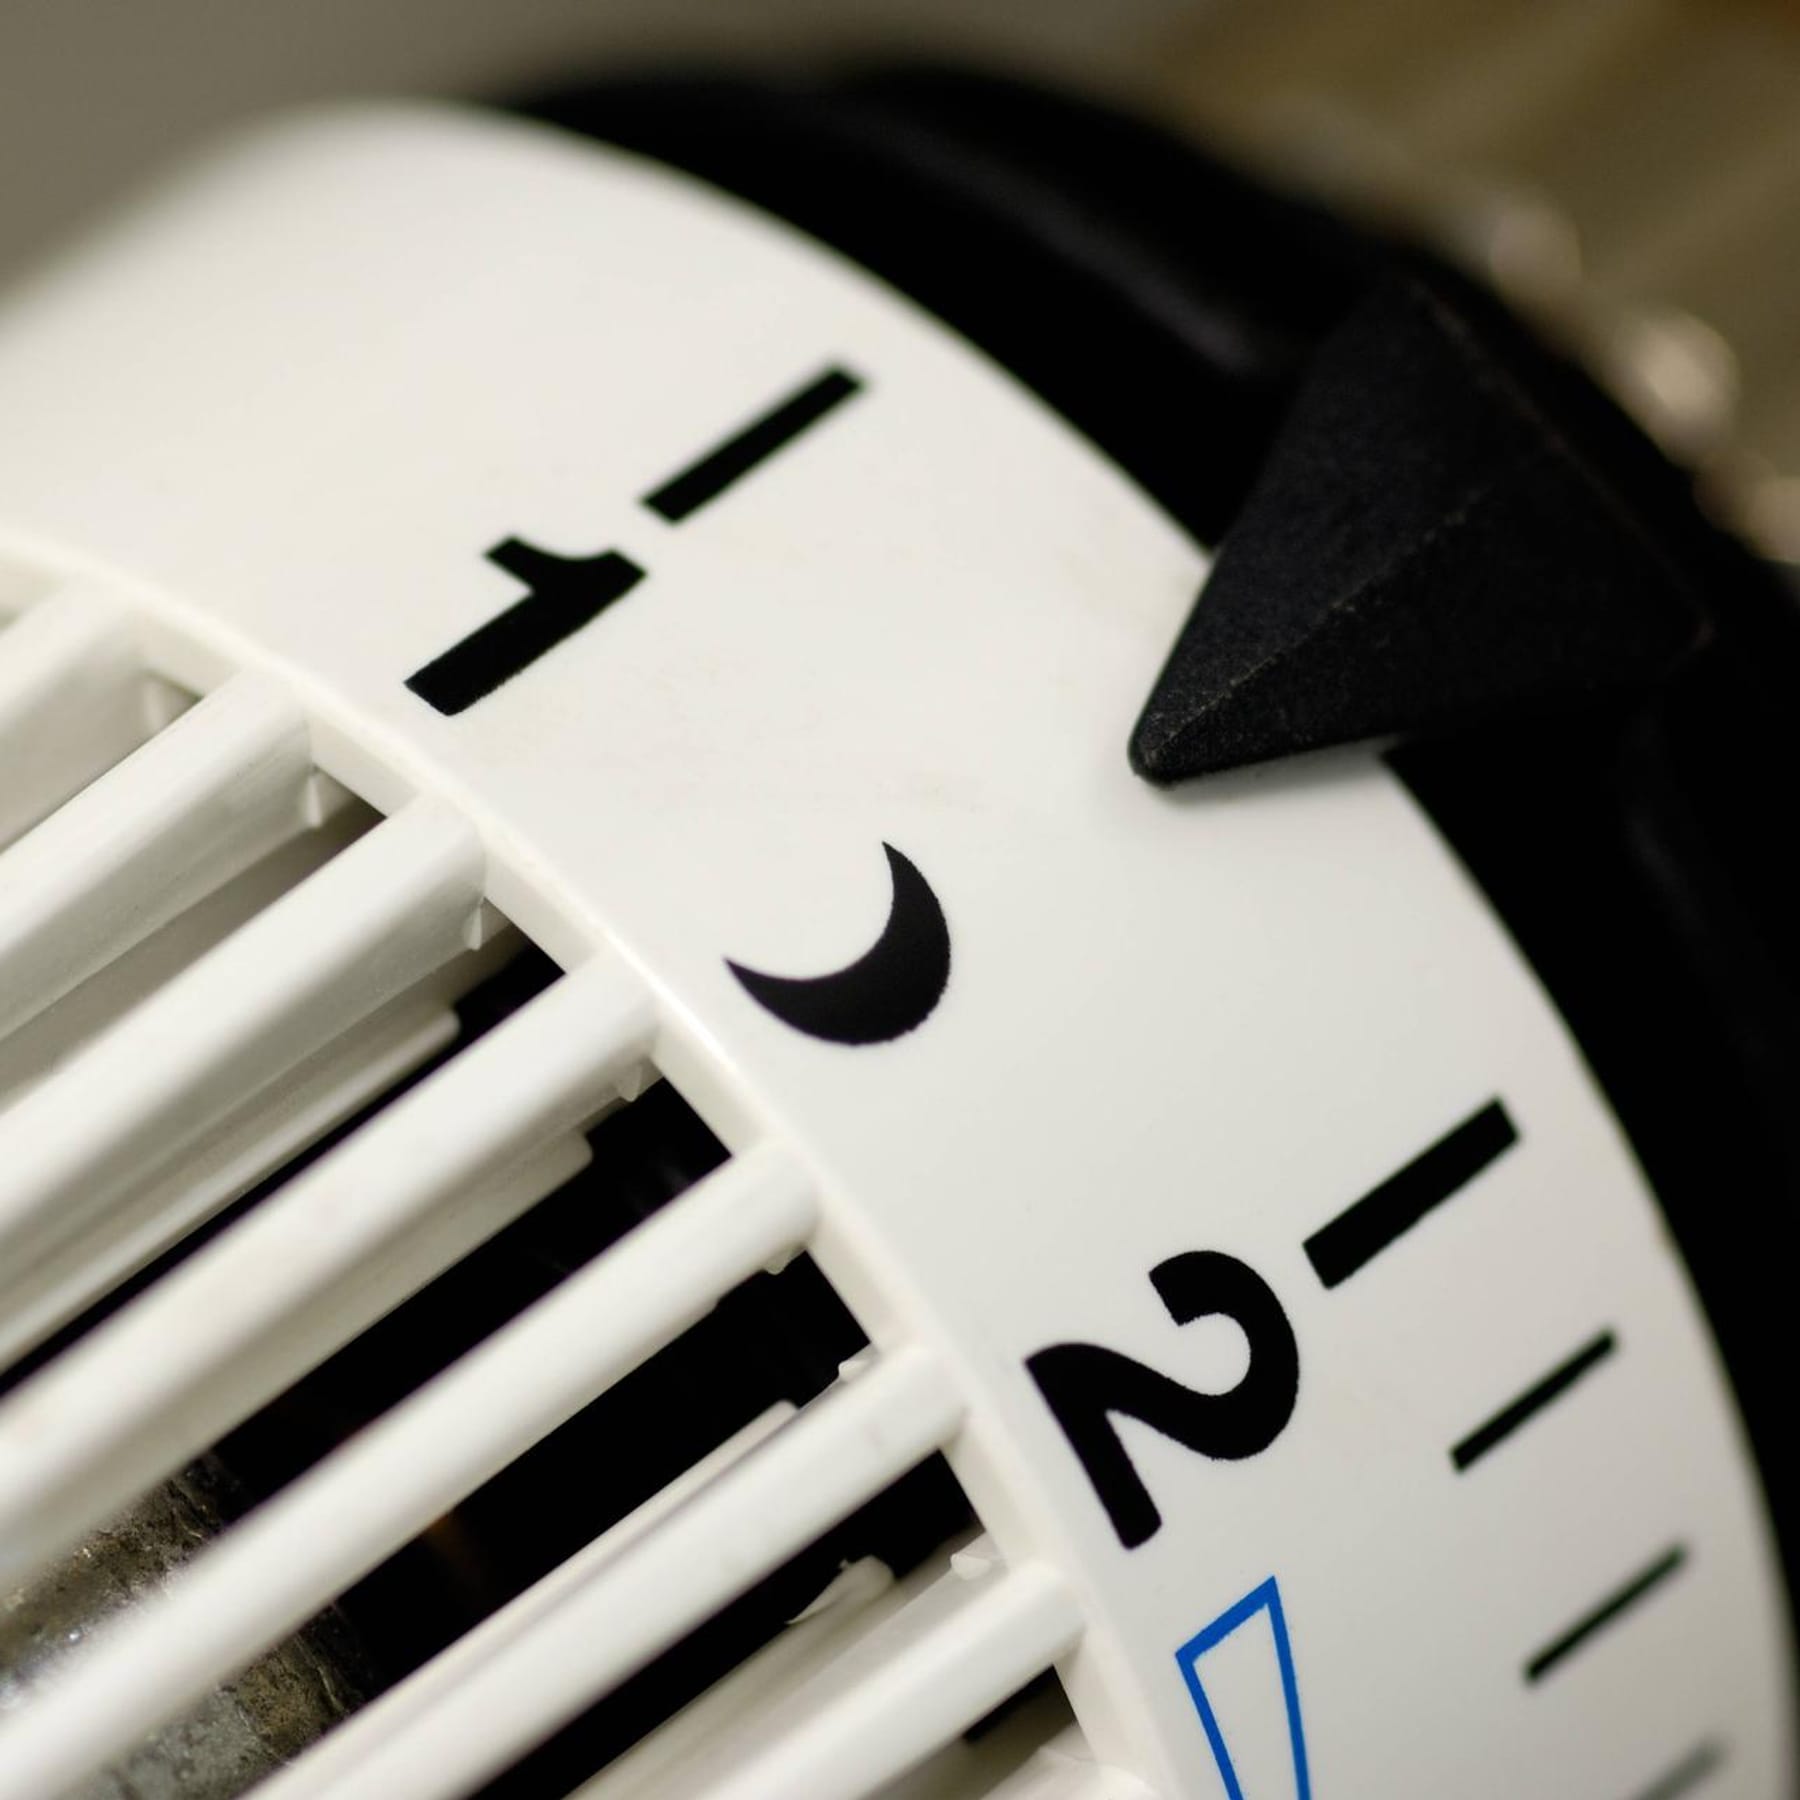 Heizungstemperatur: Das bedeuten die Zahlen auf dem Thermostat